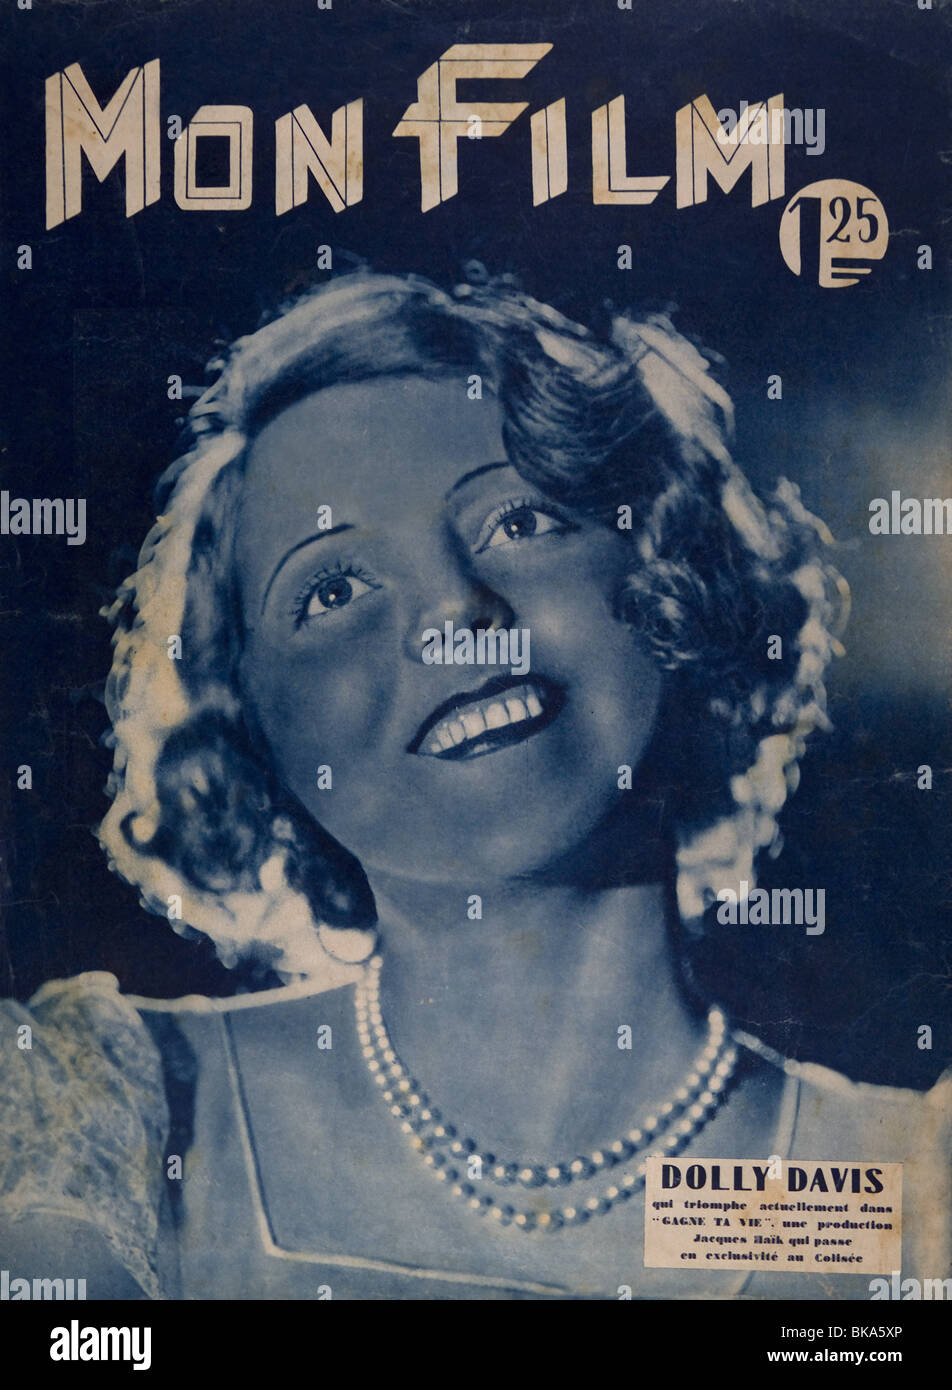 Dolly Davis actriz francesa en 'Gagne ta vie' 1931 Portada de la revista de cine Mon Foto de stock